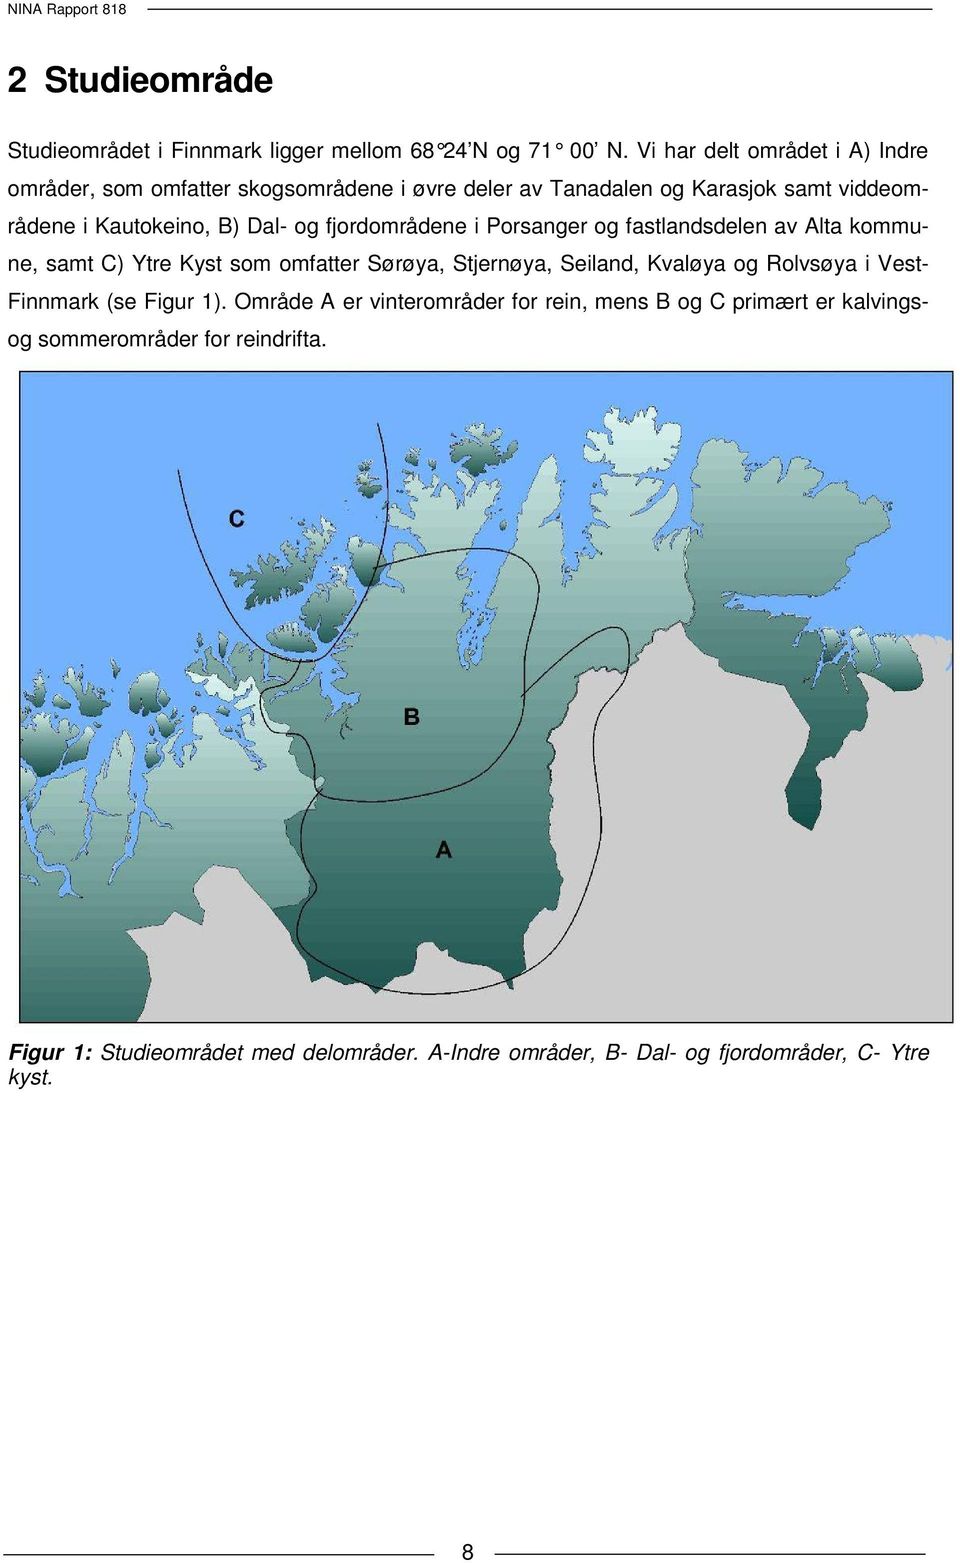 og fjordområdene i Porsanger og fastlandsdelen av Alta kommune, samt C) Ytre Kyst som omfatter Sørøya, Stjernøya, Seiland, Kvaløya og Rolvsøya i